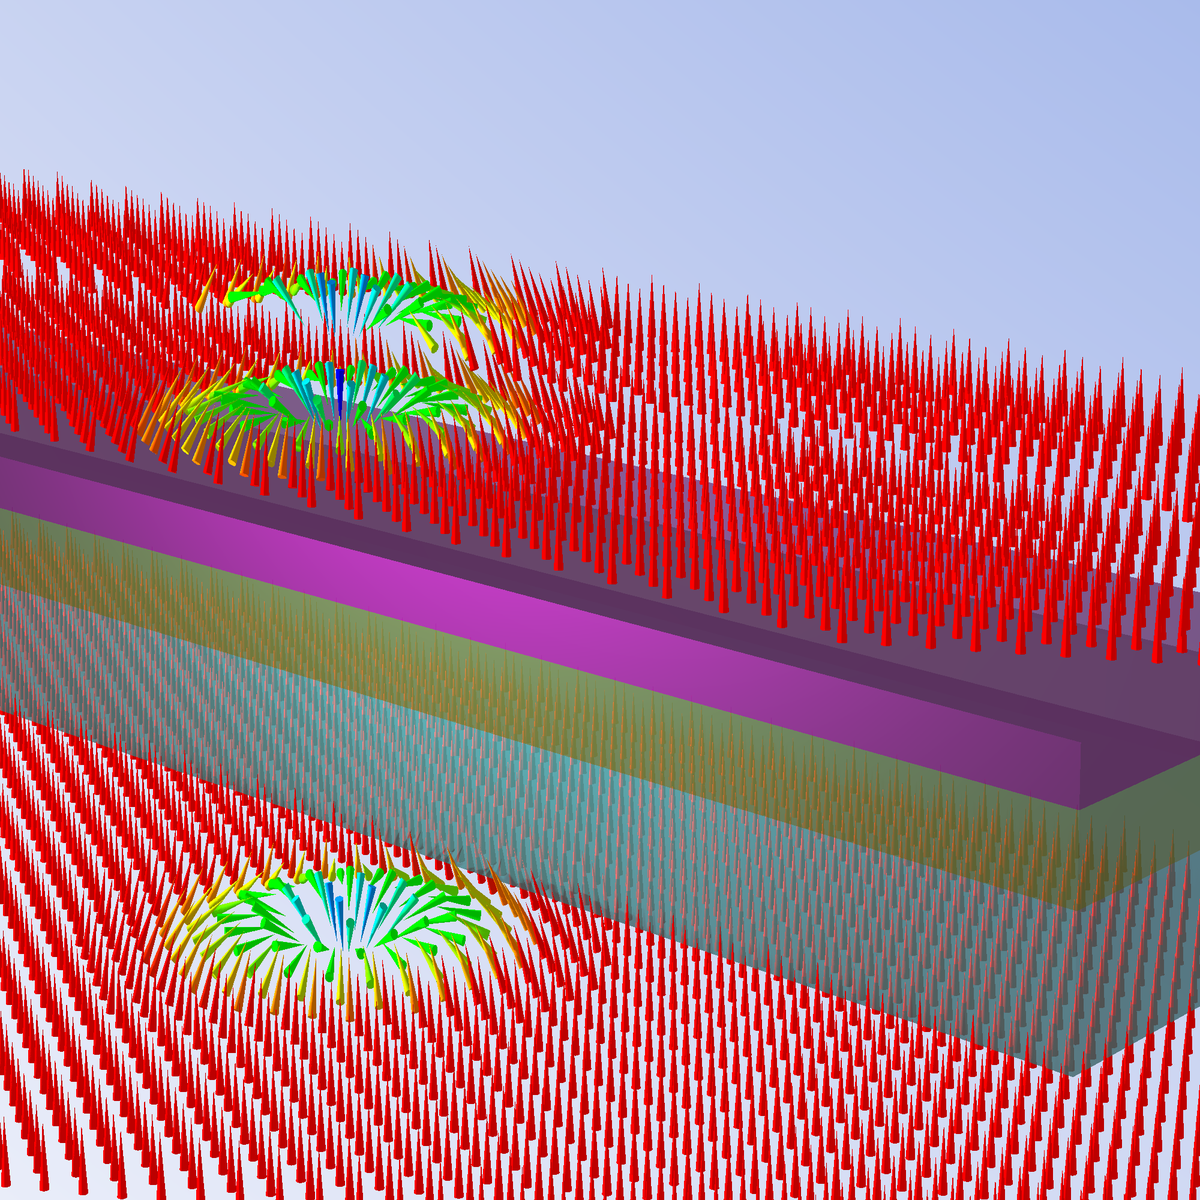 Winzige magnetische Wirbel mit einem Durchmesser von nur wenigen Nanometern in einer metallischen Schichtstruktur